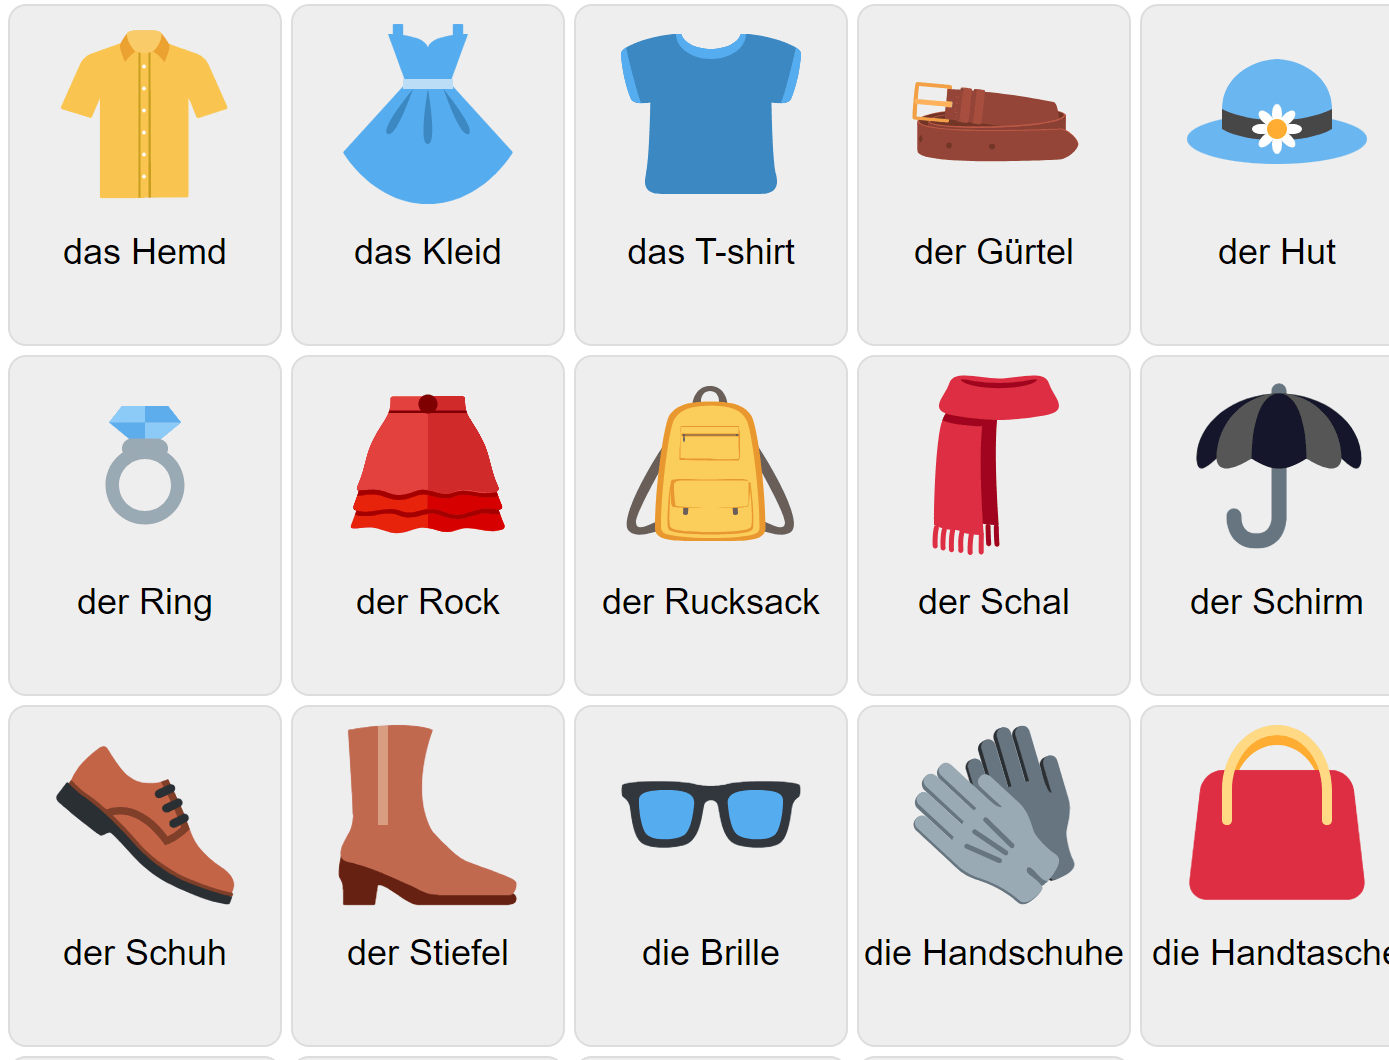 Kläder på tyska